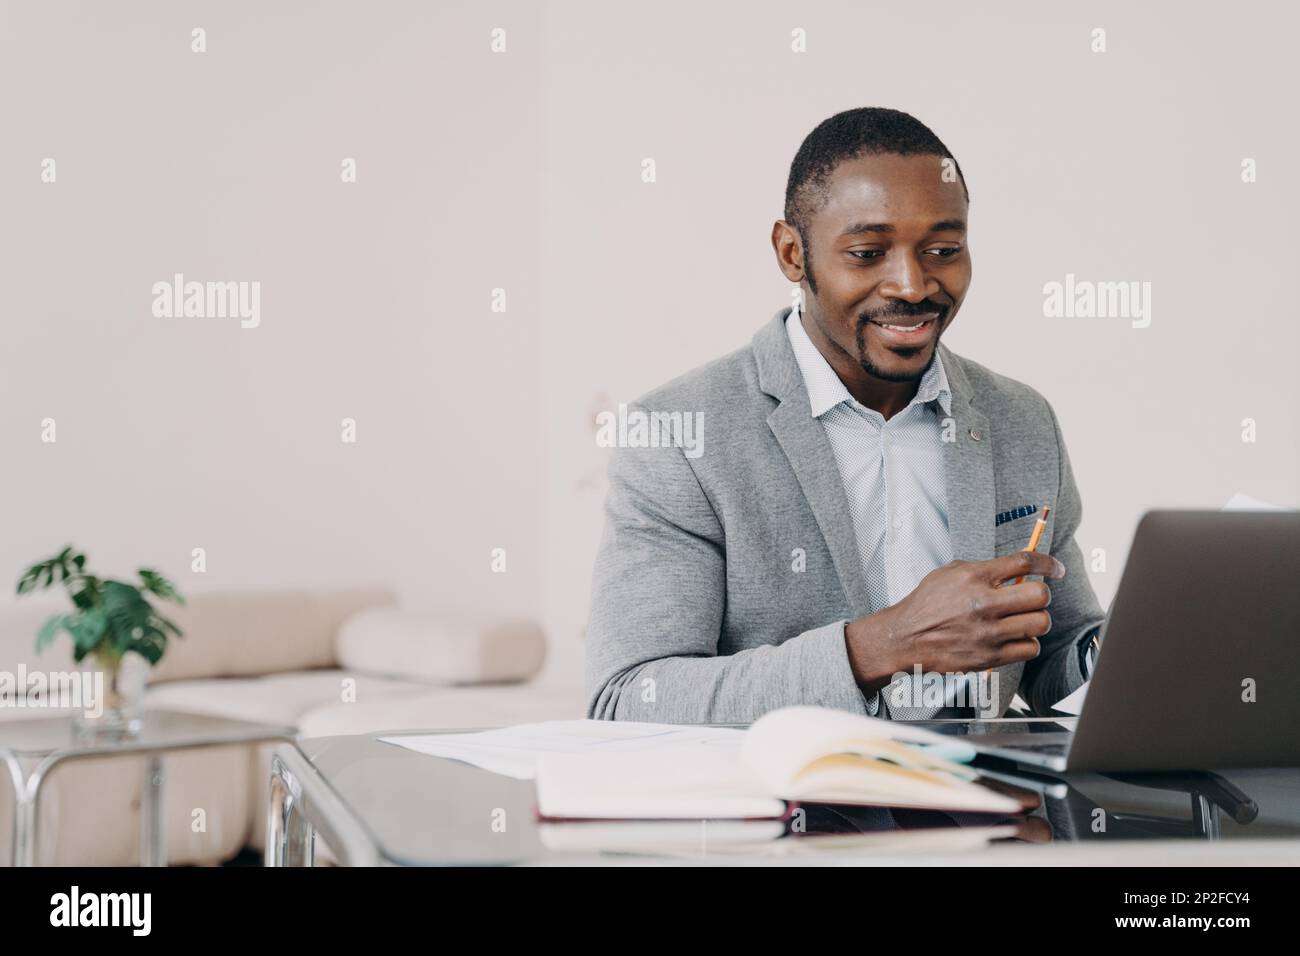 Lächelnder afroamerikanischer Mann, der online am Schreibtisch am Laptop arbeitet. Schwarzer männlicher Geschäftsmann, der auf einen Computerbildschirm schaut, E-Mails mit gutem ne liest Stockfoto